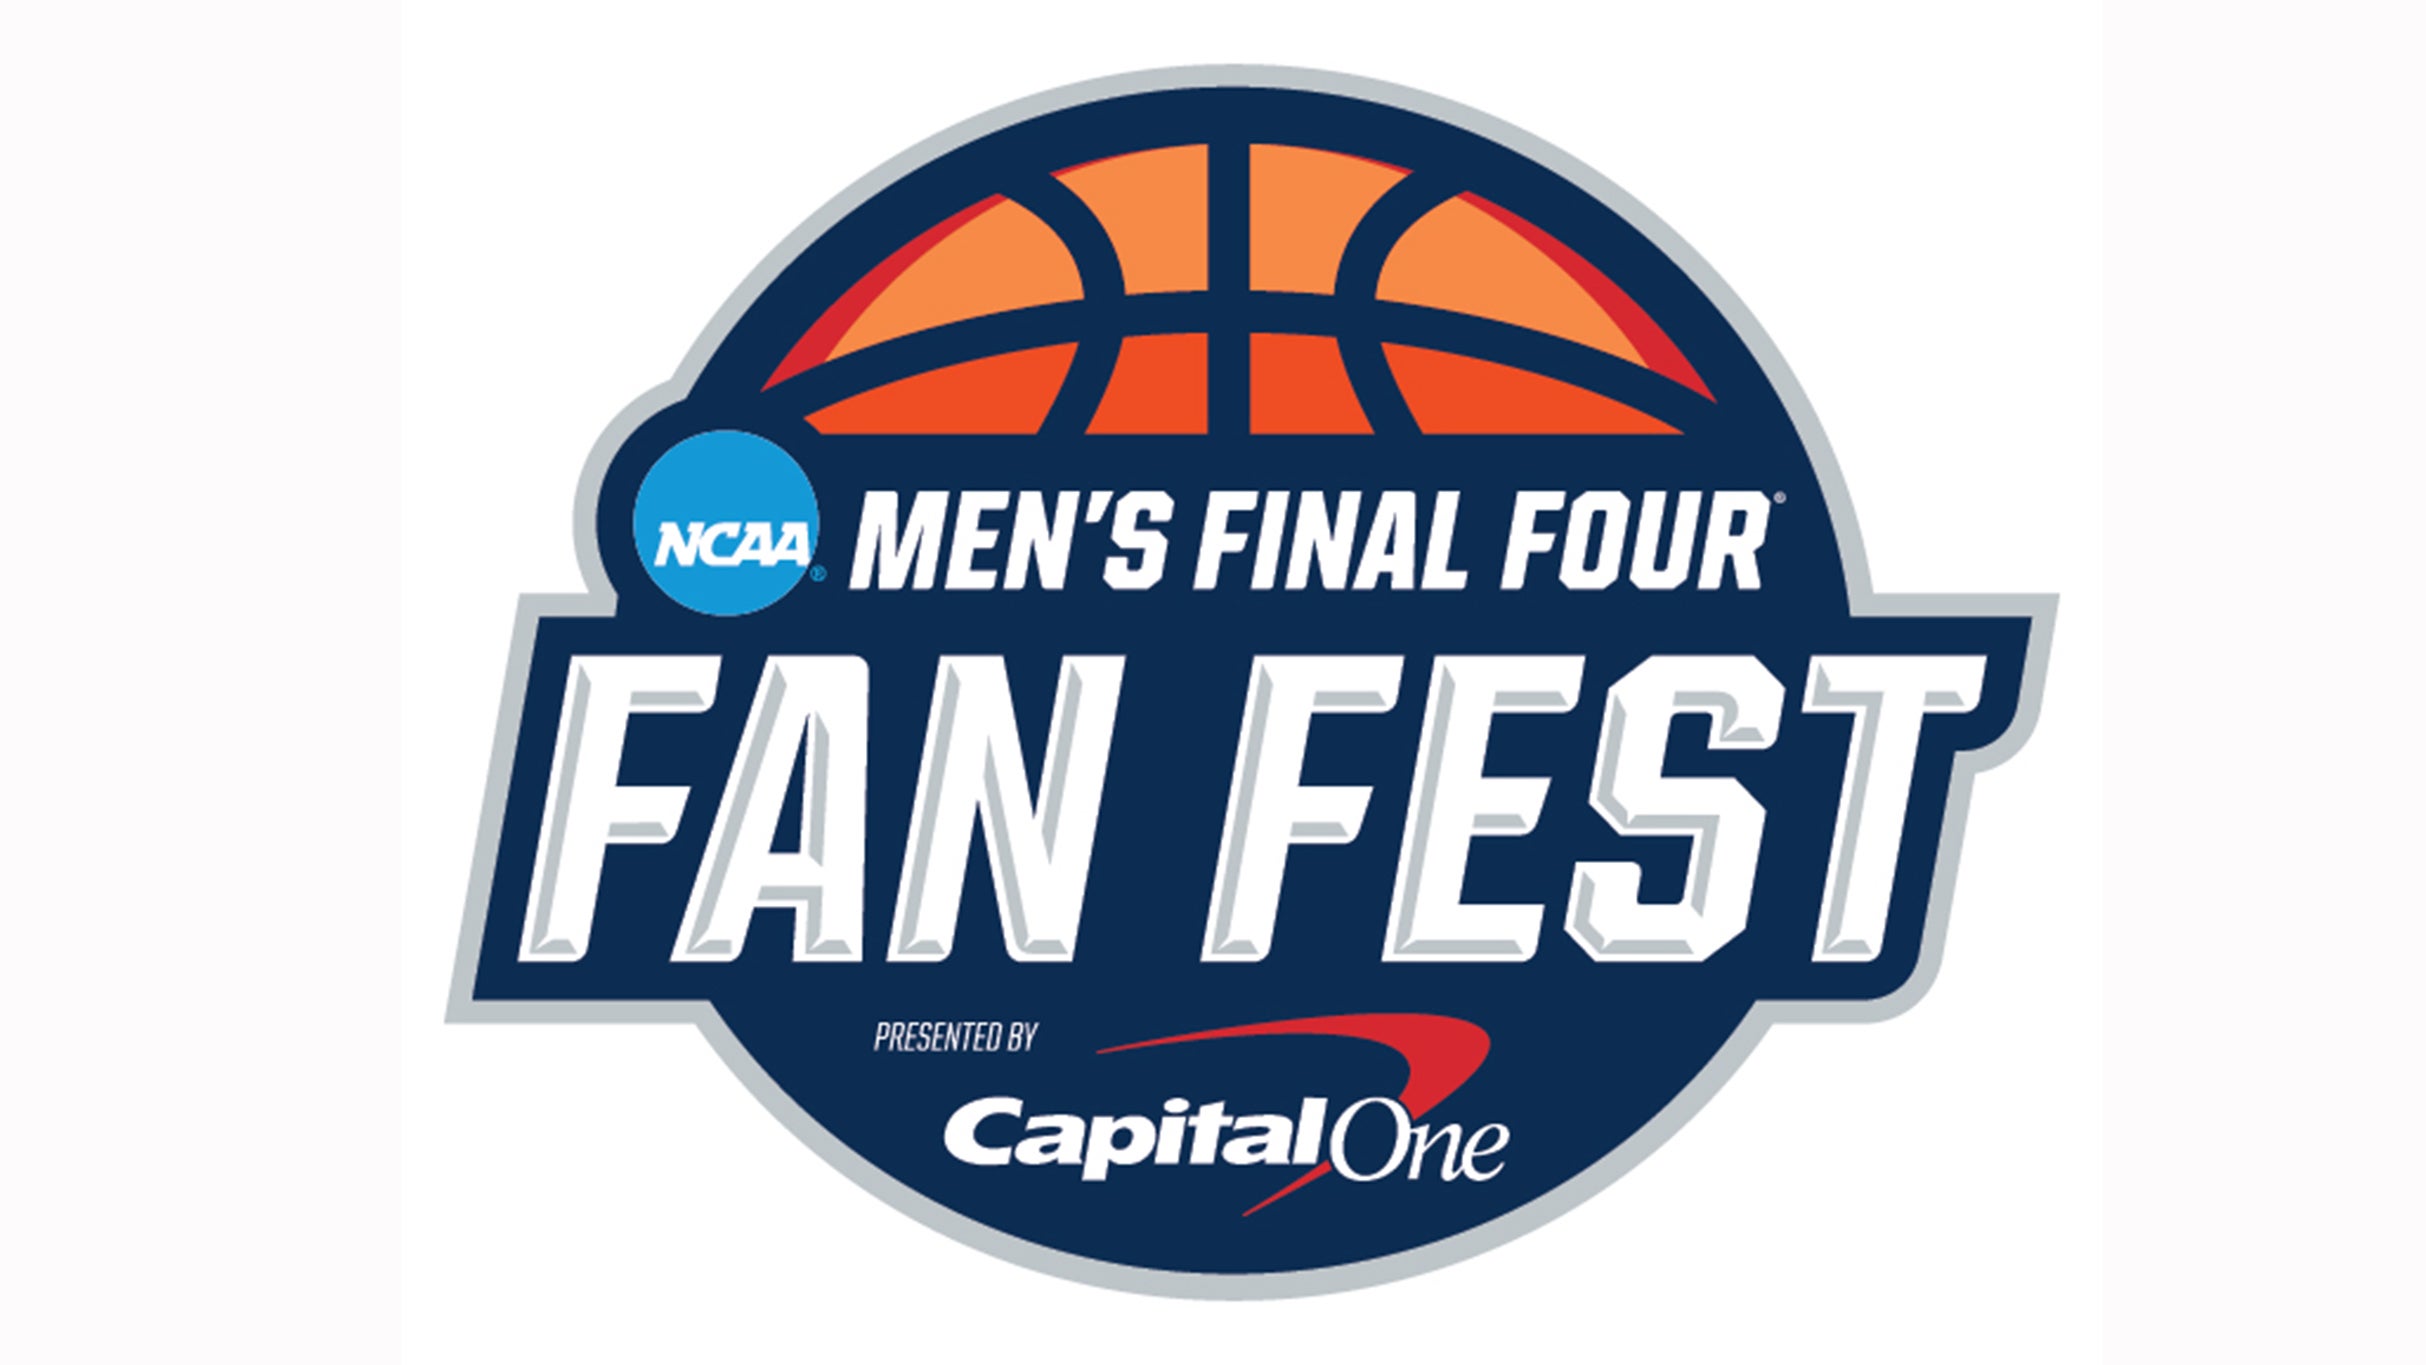 Men's Final Four Fan Fest at Phoenix Convention Center